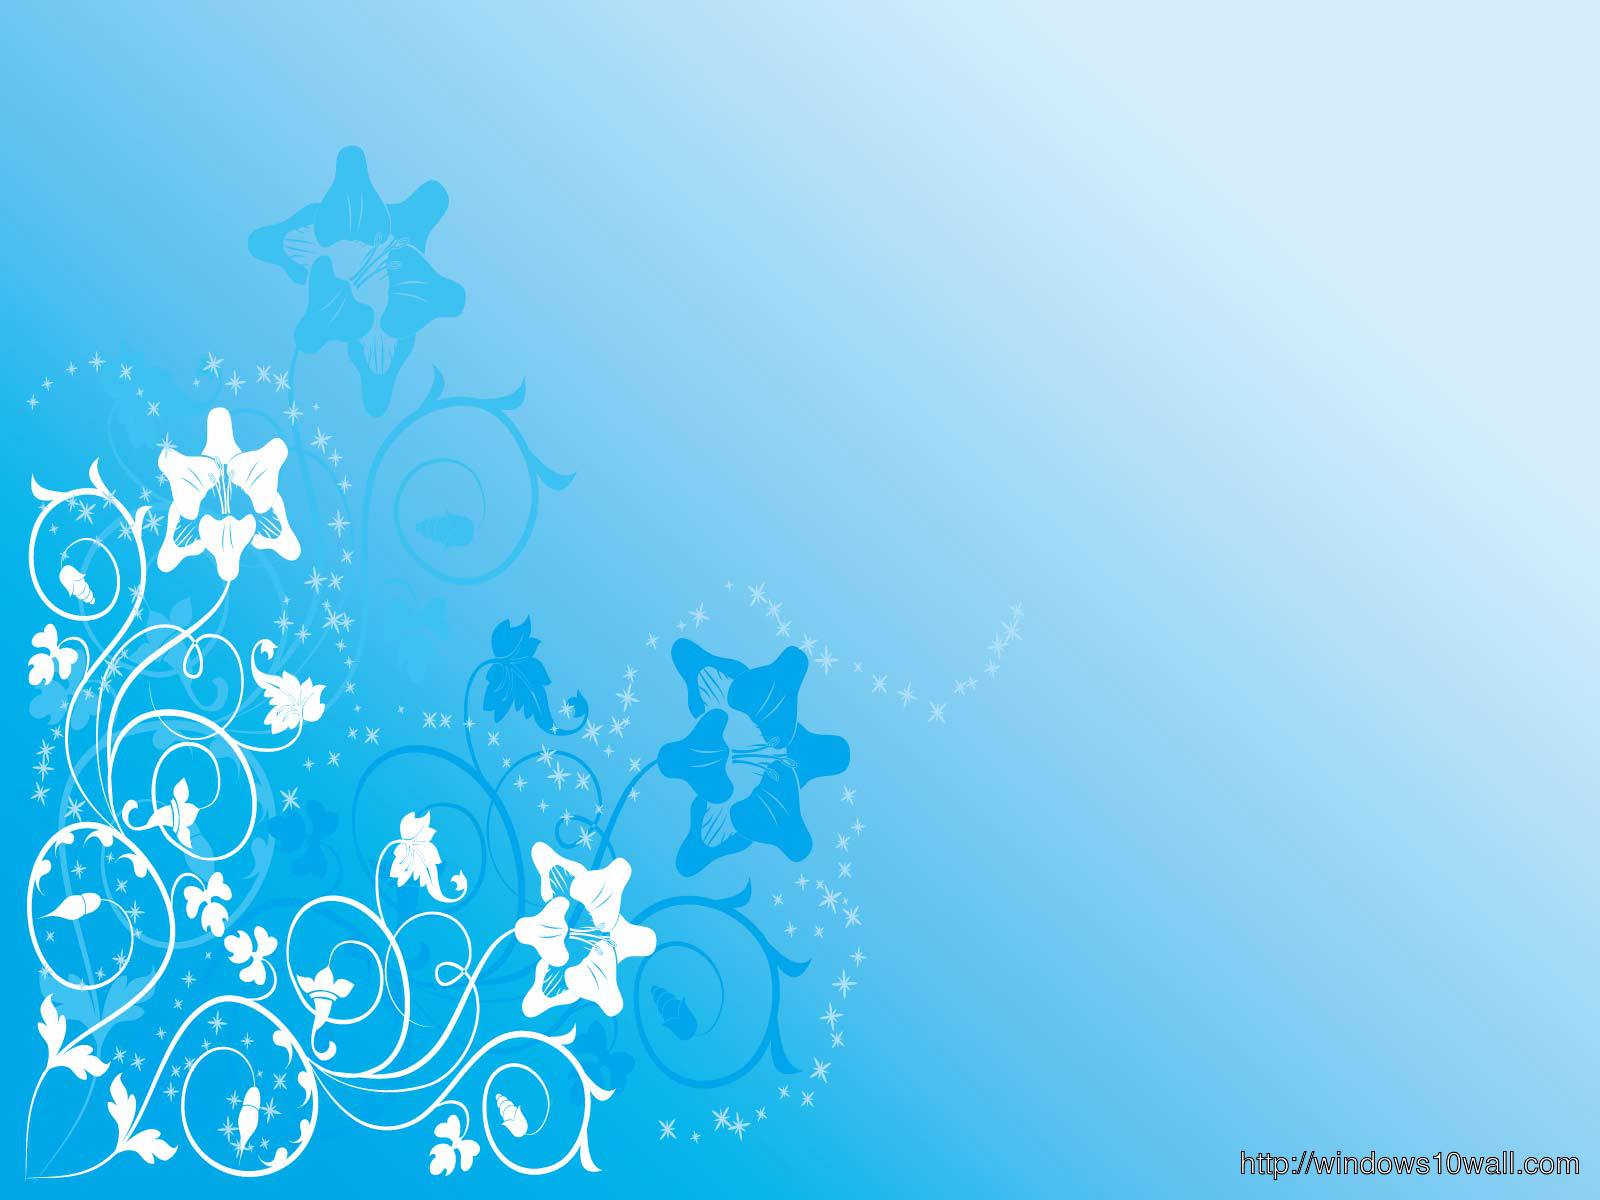 White n Blue Stars Nice Background Wallpaper